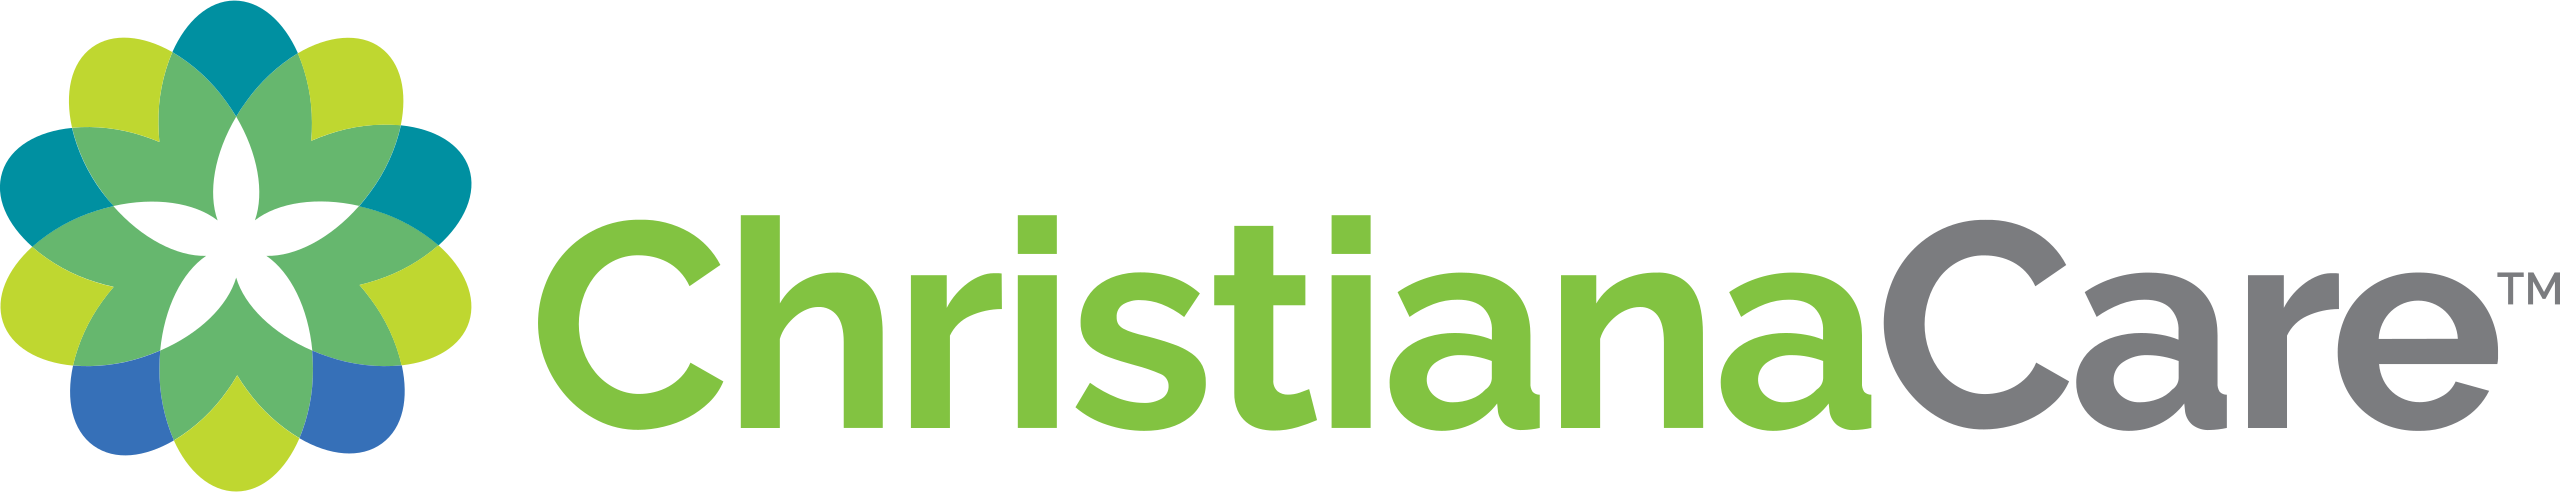 Christiancare-logo.svg-1